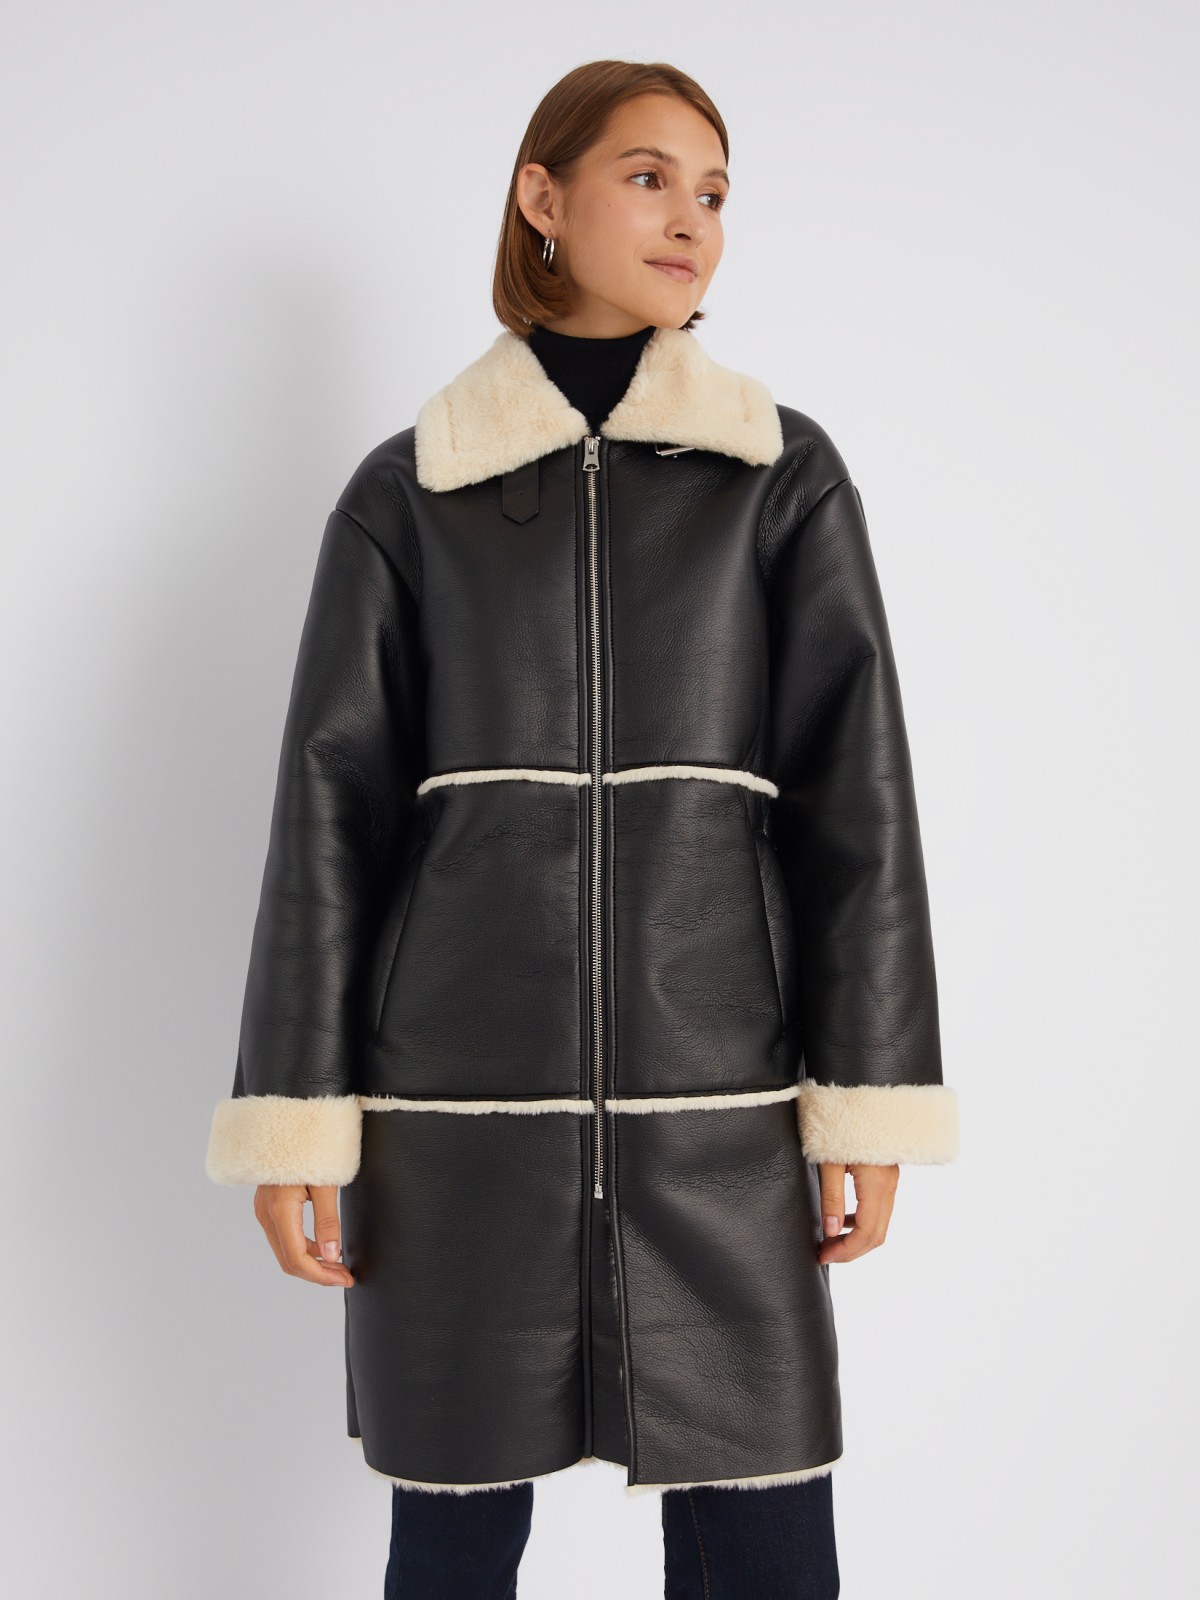 Длинное тёплое пальто-дублёнка из экокожи с искусственным мехом по подкладке zolla 023335550084, цвет черный, размер M - фото 3